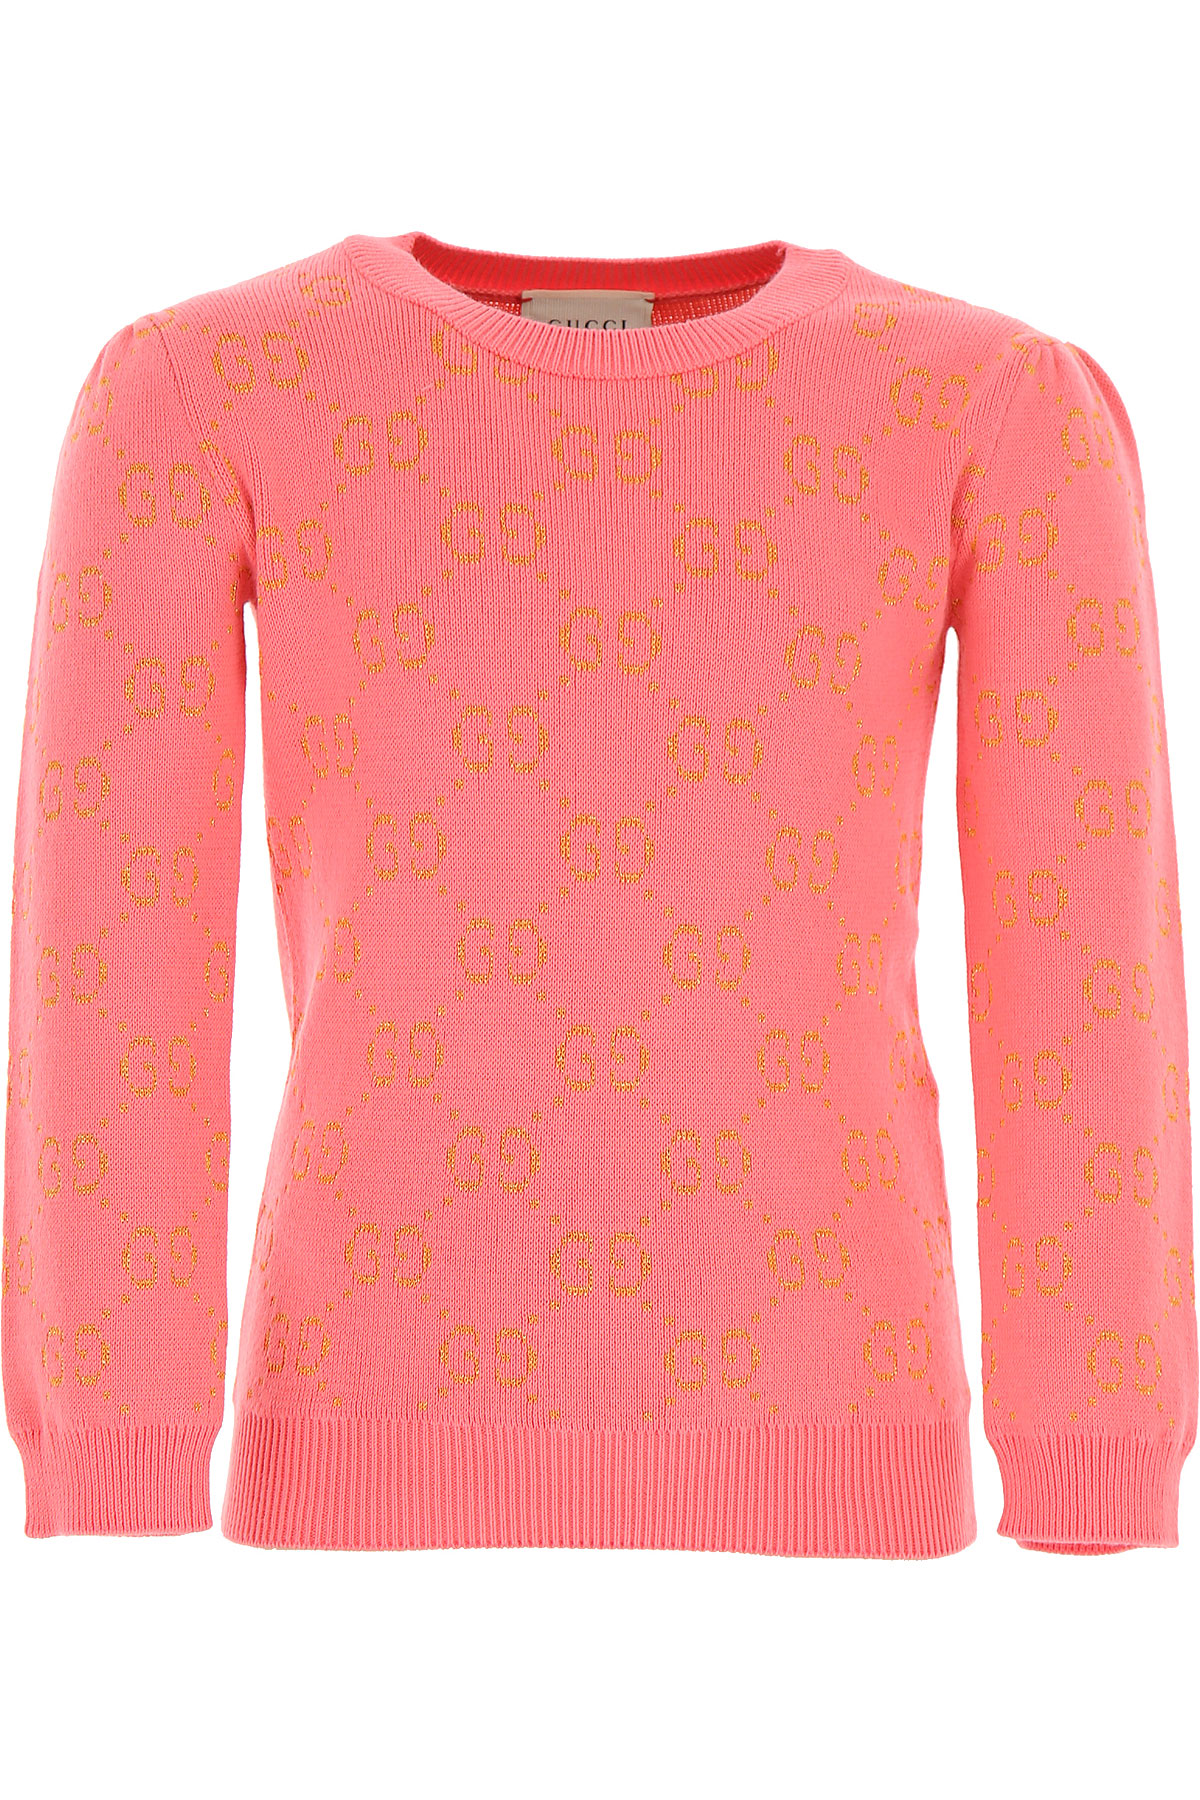 Gucci Kinder Pullover für Mädchen Günstig im Sale, Pink, Baumwolle, 2017, 10Y 6Y